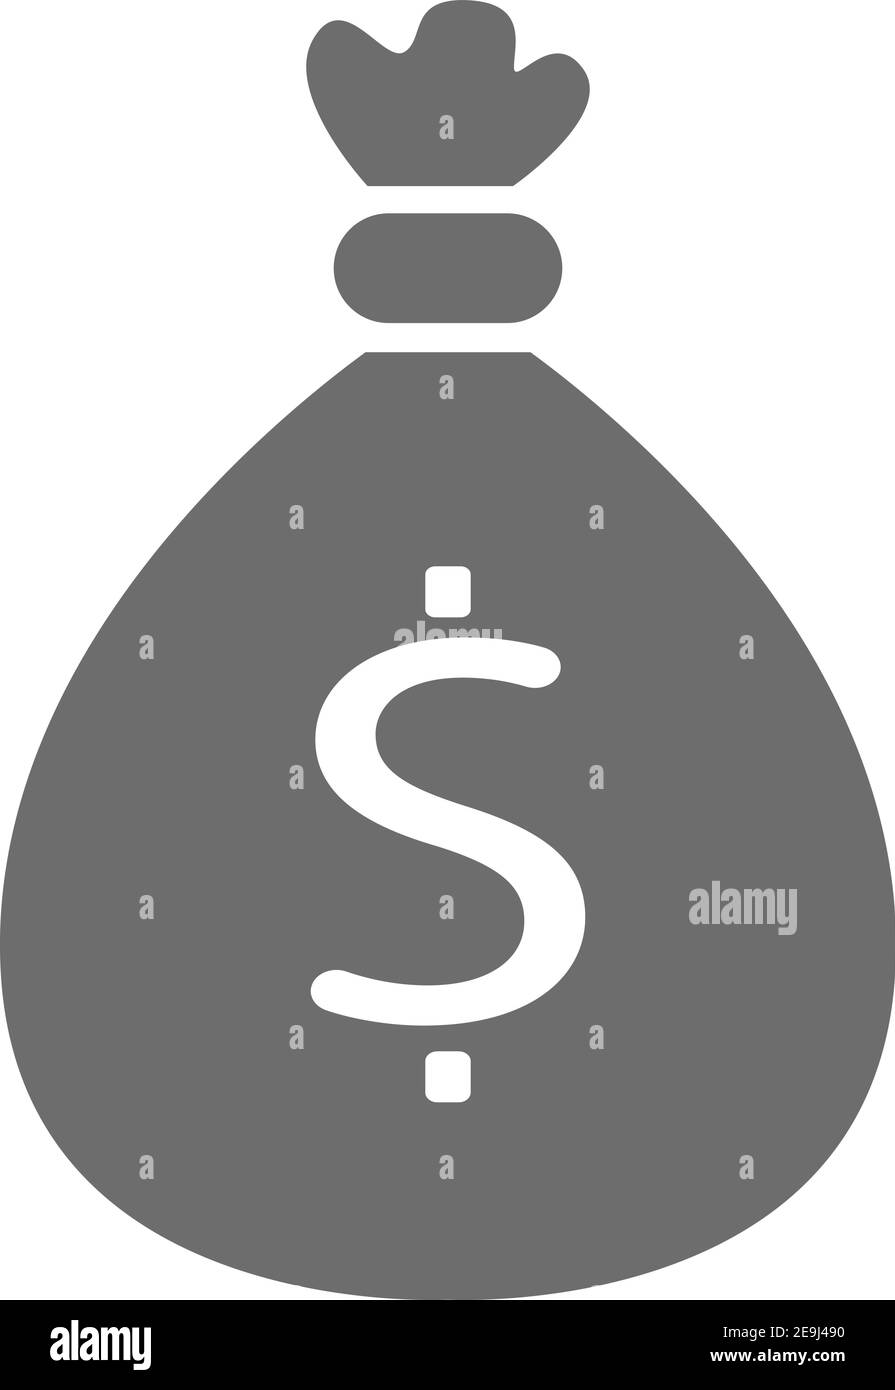 Bag of money, illustration, vector on white background. Stock Vector